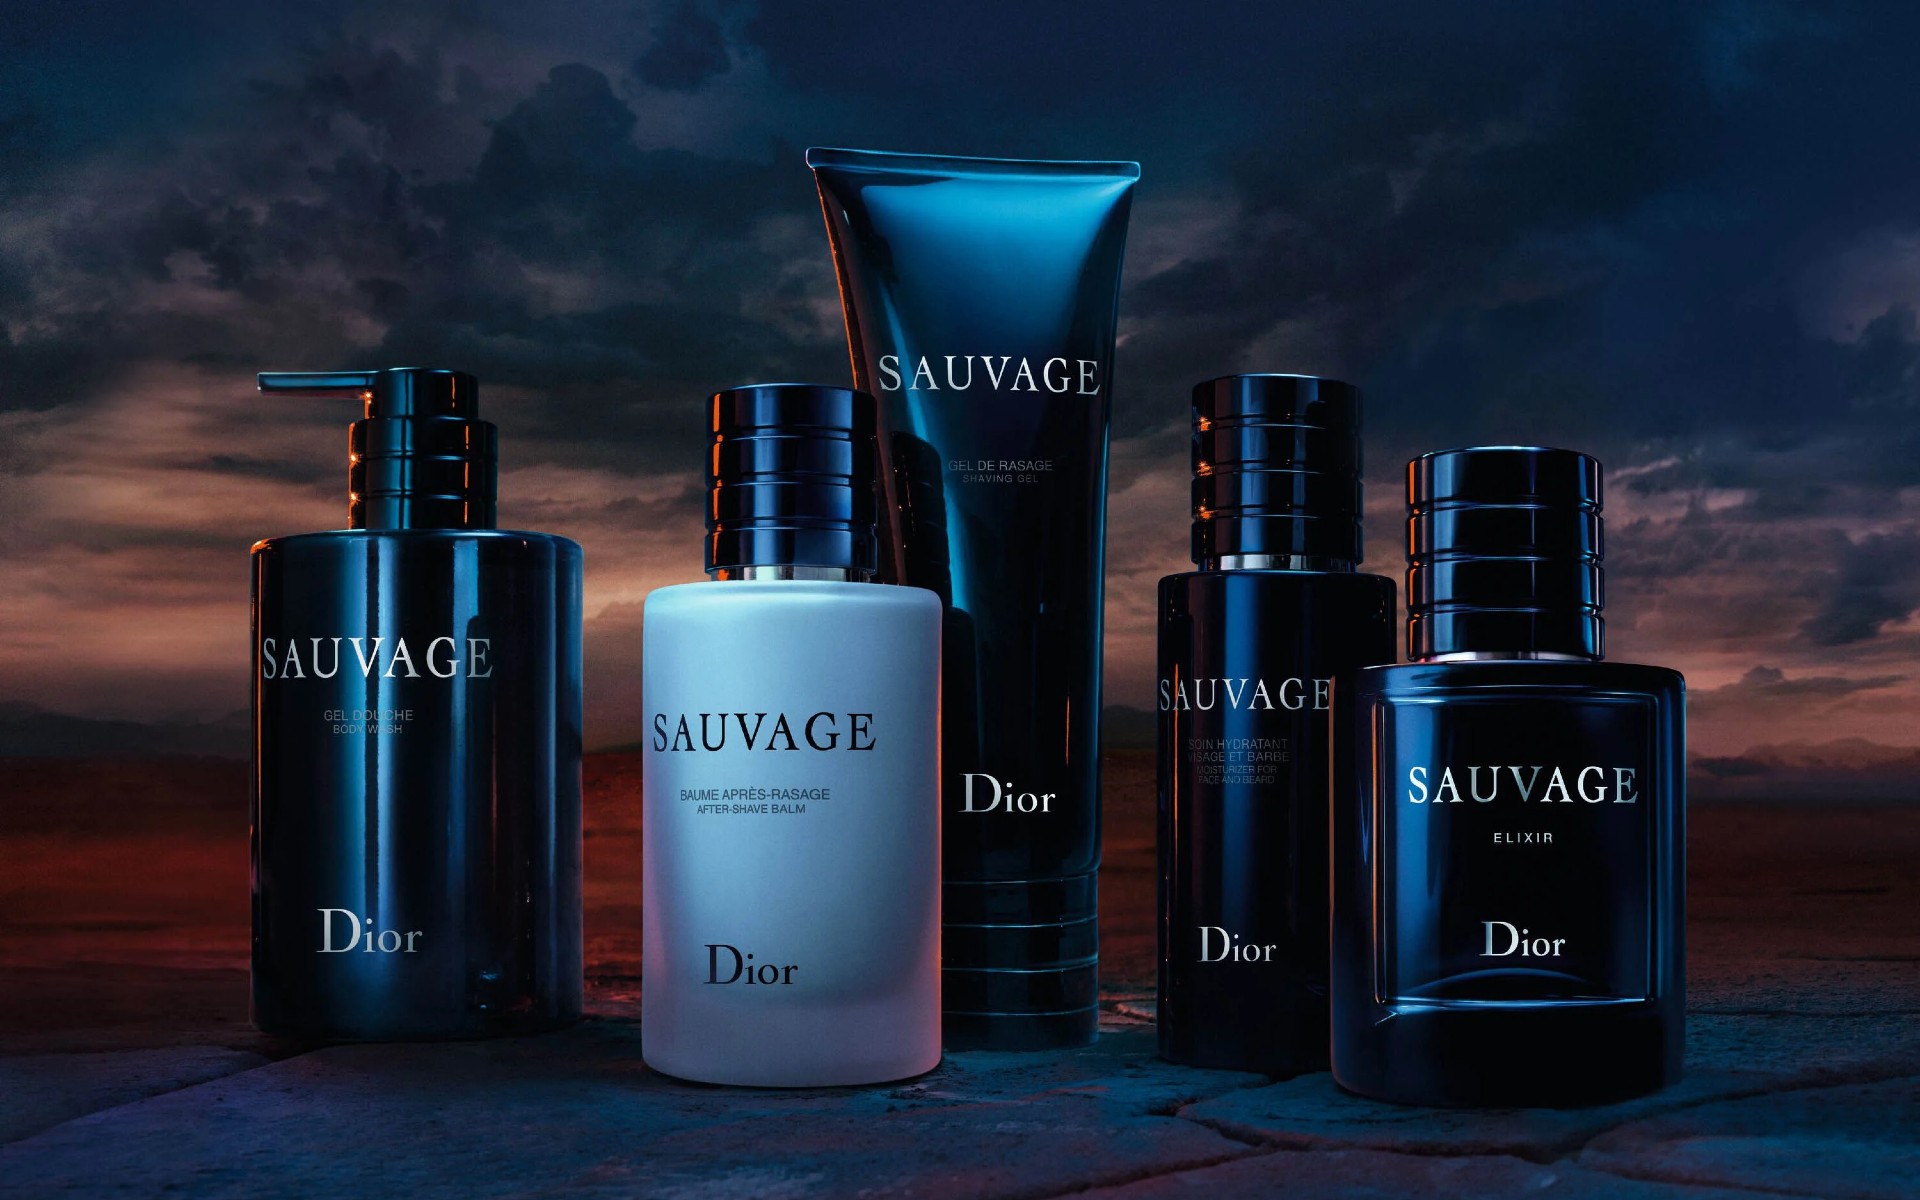 Tổng hợp các mẫu nước hoa Dior Sauvage đang giảm giá rất tốt tại Mỹ